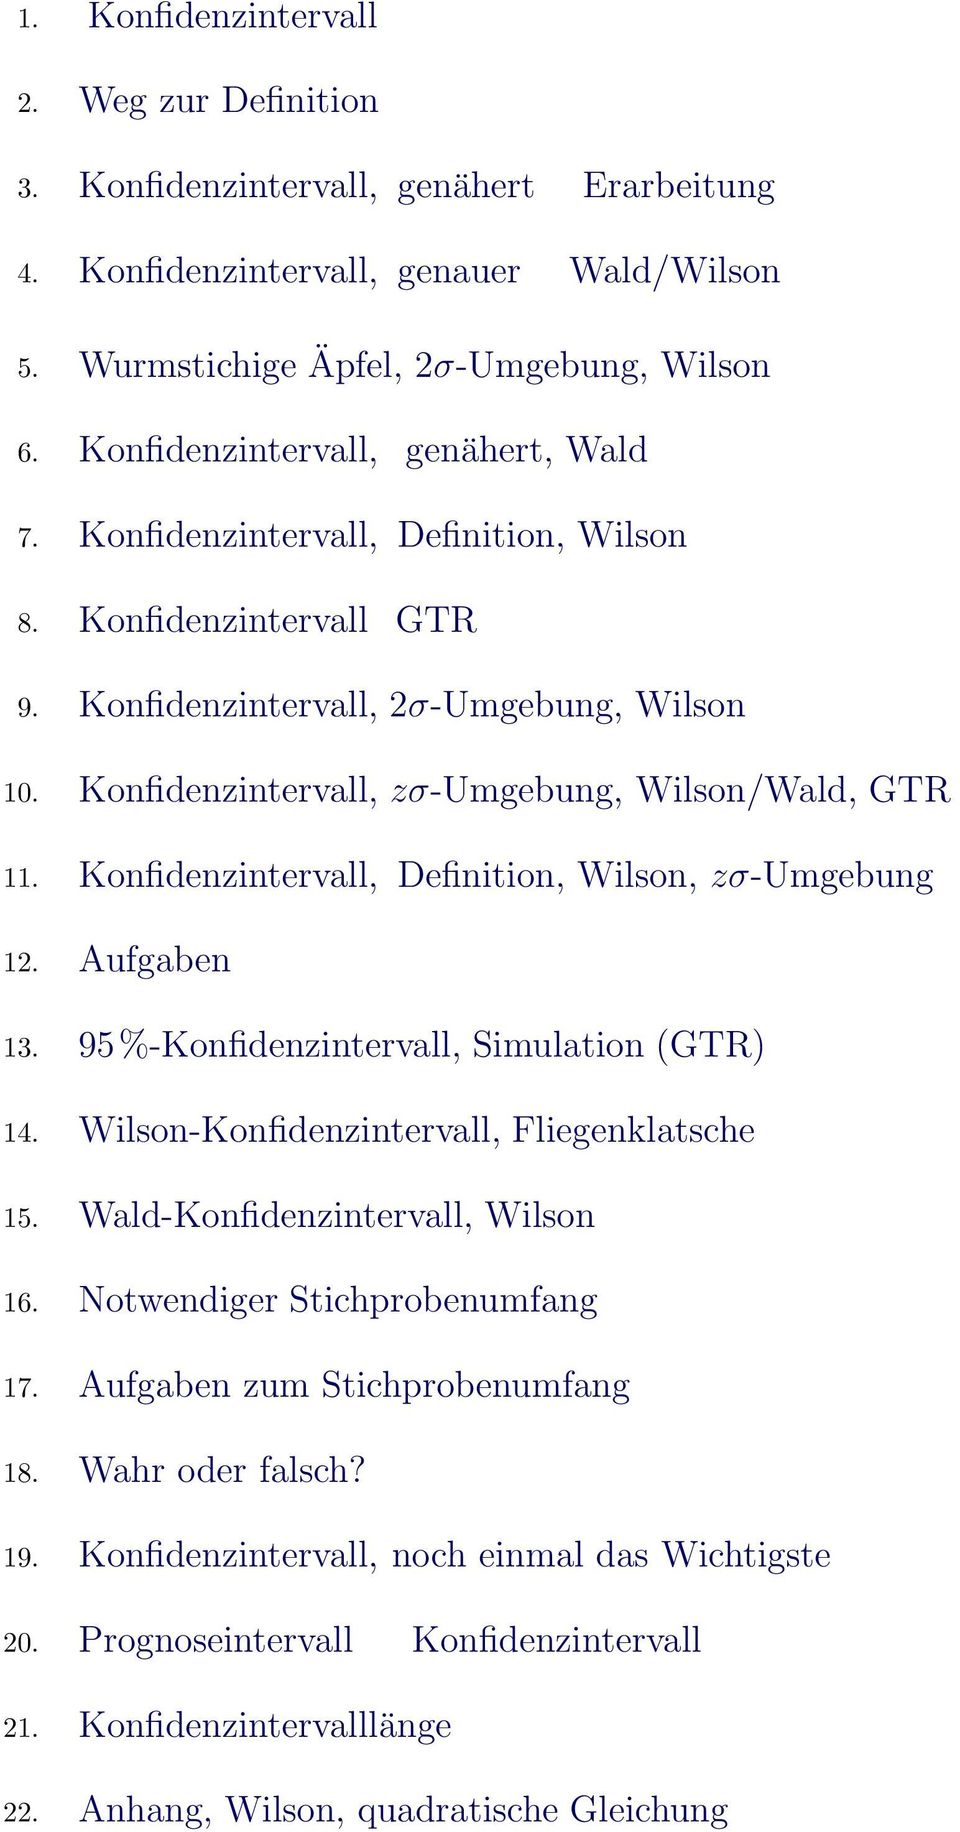 Kofidezitervall, Defiitio, Wilso, zσ-umgebug 12. Aufgabe 13. 95%-Kofidezitervall, Simulatio (GTR) 14. Wilso-Kofidezitervall, Fliegeklatsche 15. Wald-Kofidezitervall, Wilso 16.